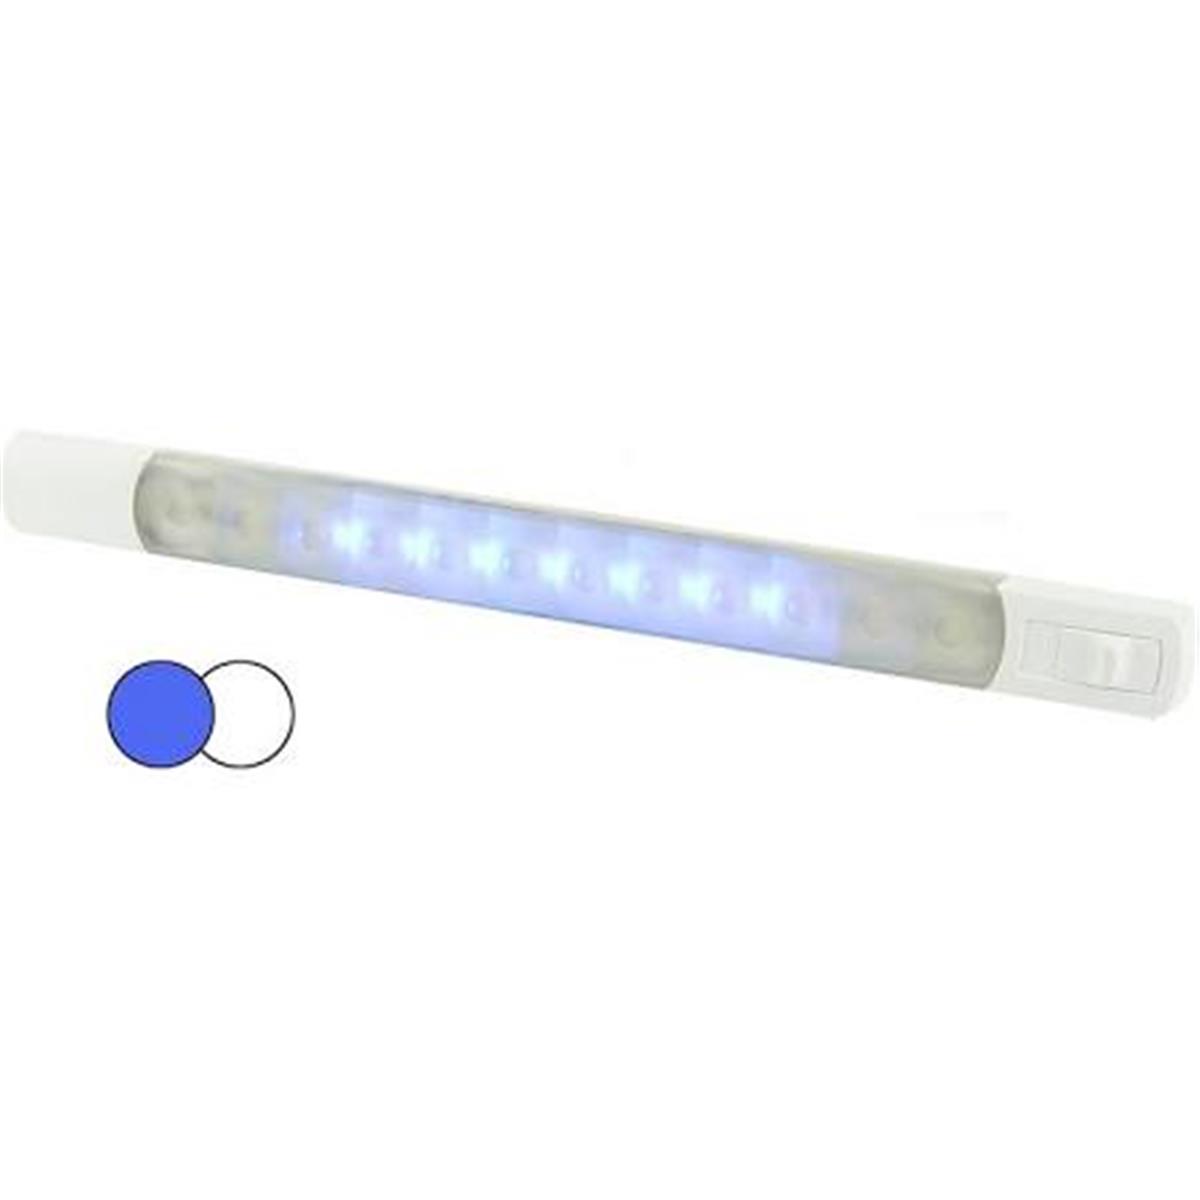 958121011 12v Led Strip Light - White & Blue